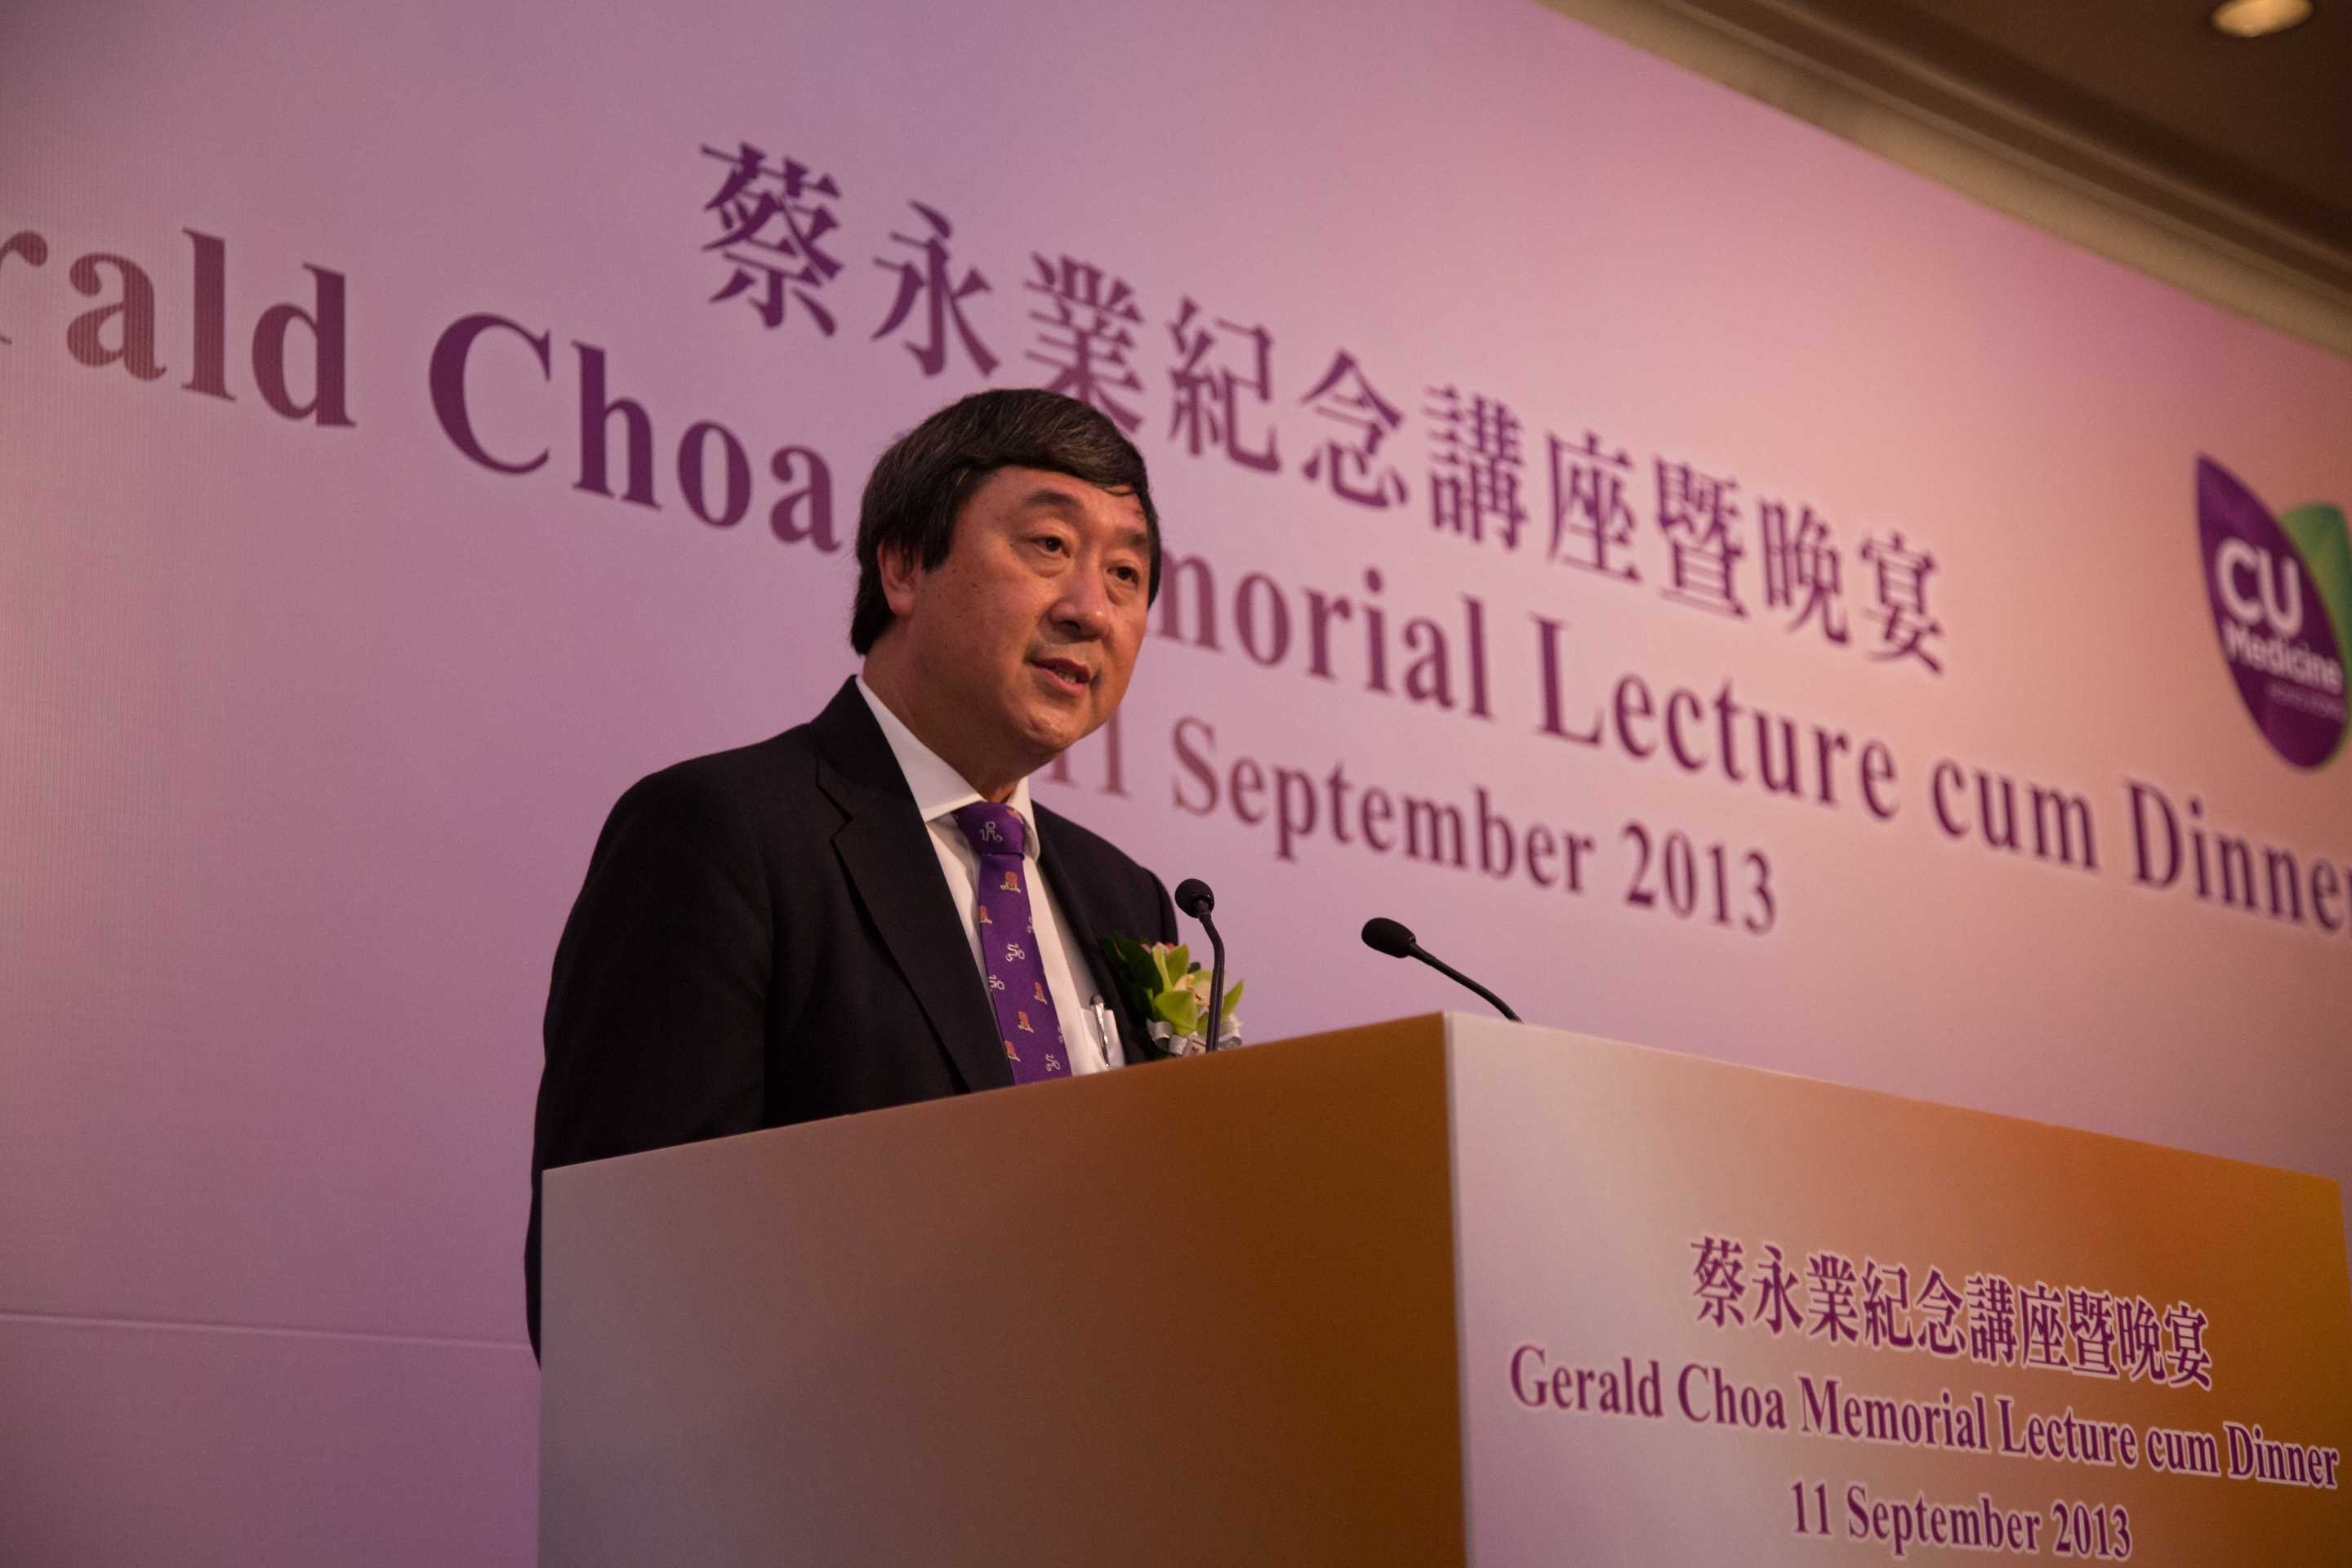 中大校长沈祖尧教授表示「蔡永业纪念讲座」的成立是为了纪念蔡教授对中大医学院的深远贡献。